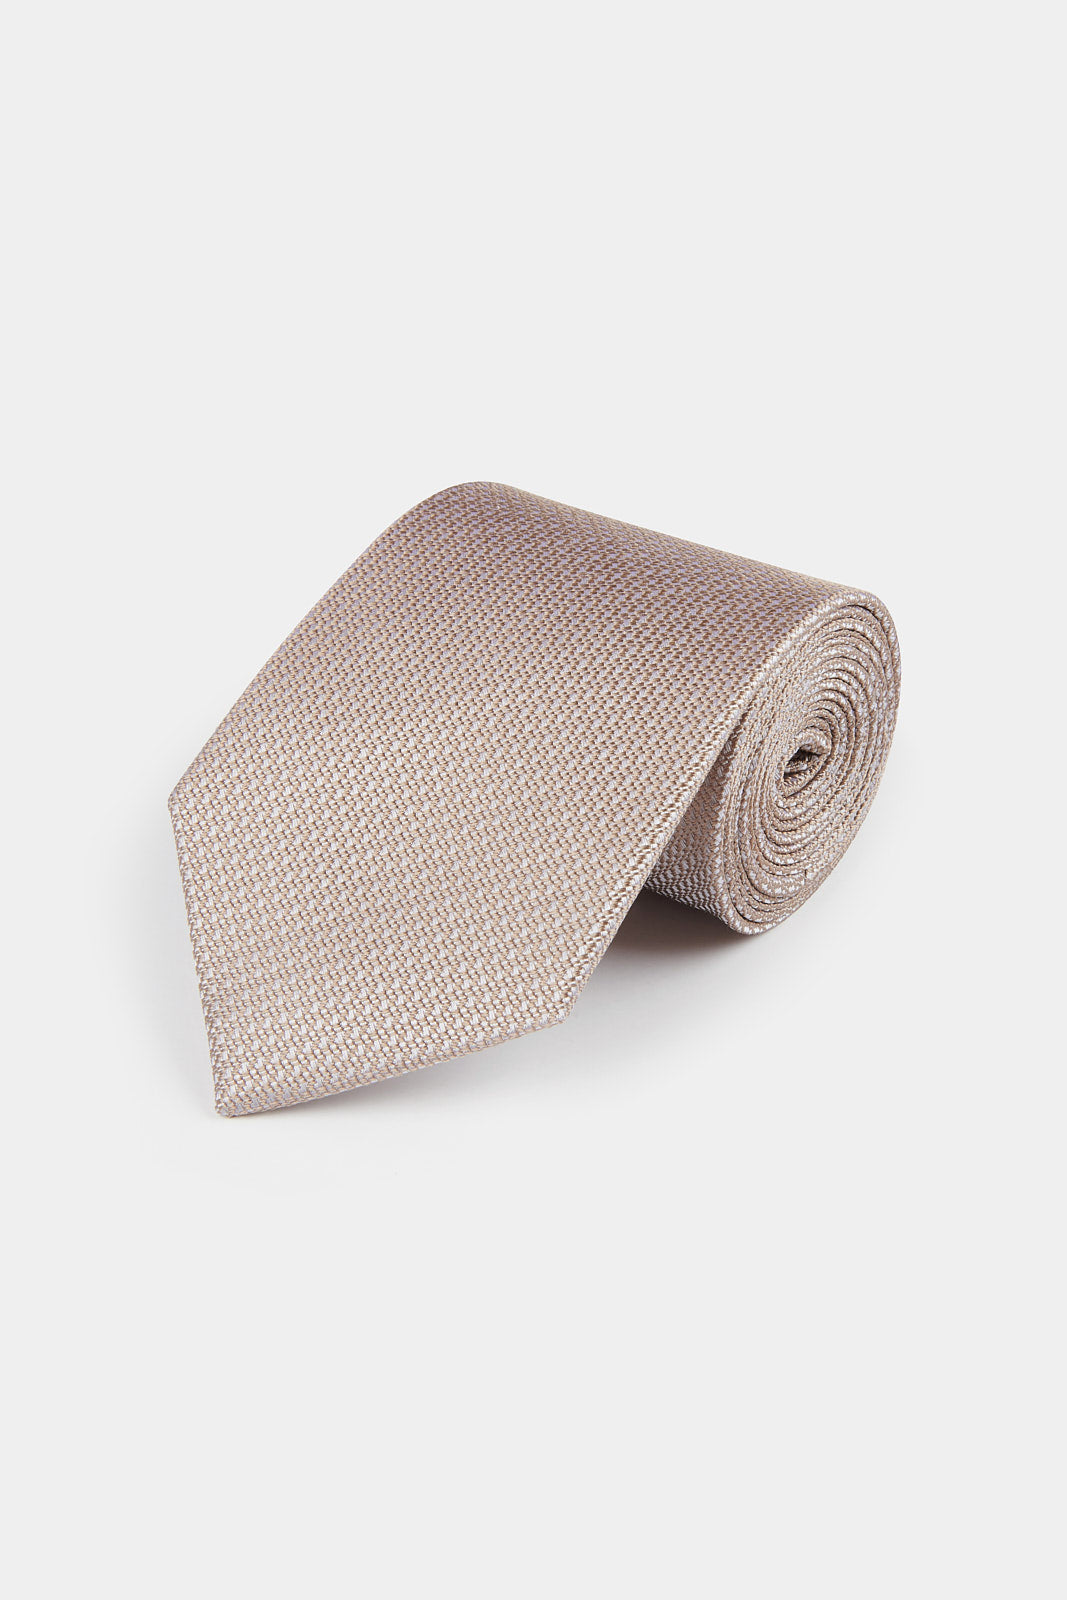 Silk Grenadine Tie in Warm Sand